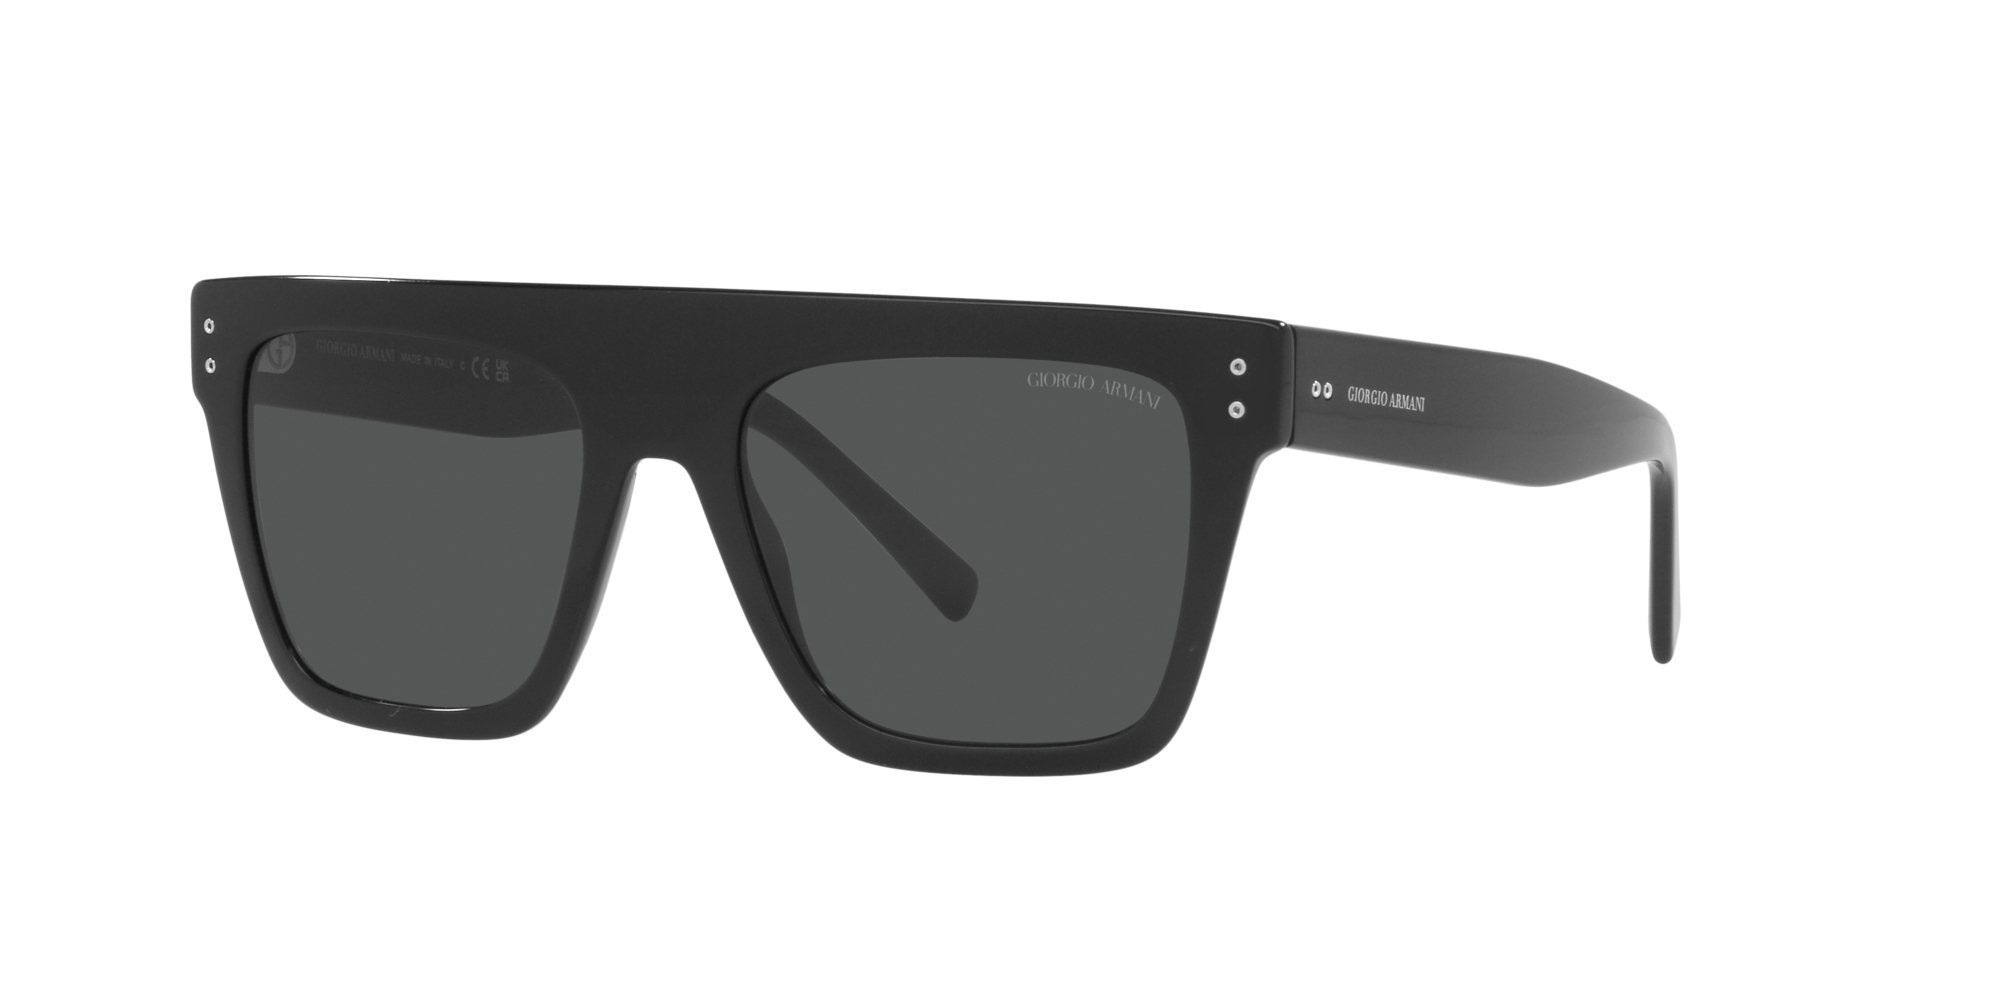 Das Bild zeigt die Sonnenbrille AR8177 500187 der Marke Giorgio Armani in schwarz